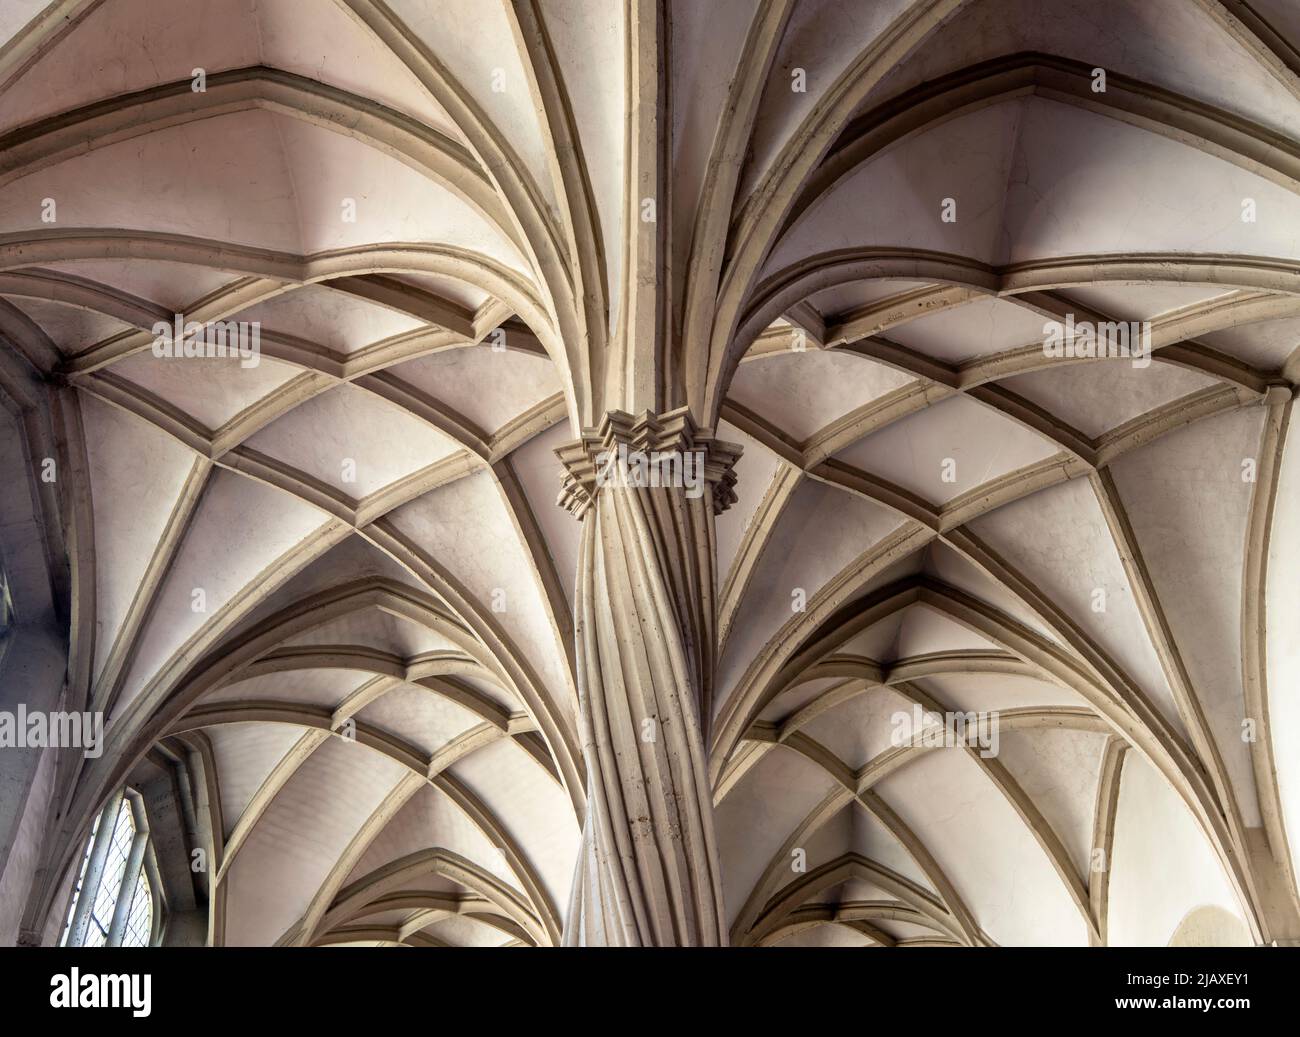 Braunschweig, Dom, Domkirche St. Blasii zu Braunschweig, nördliches Seitenschiff, spätgotische gedrehte Säulen und Gewölbe Stock Photo